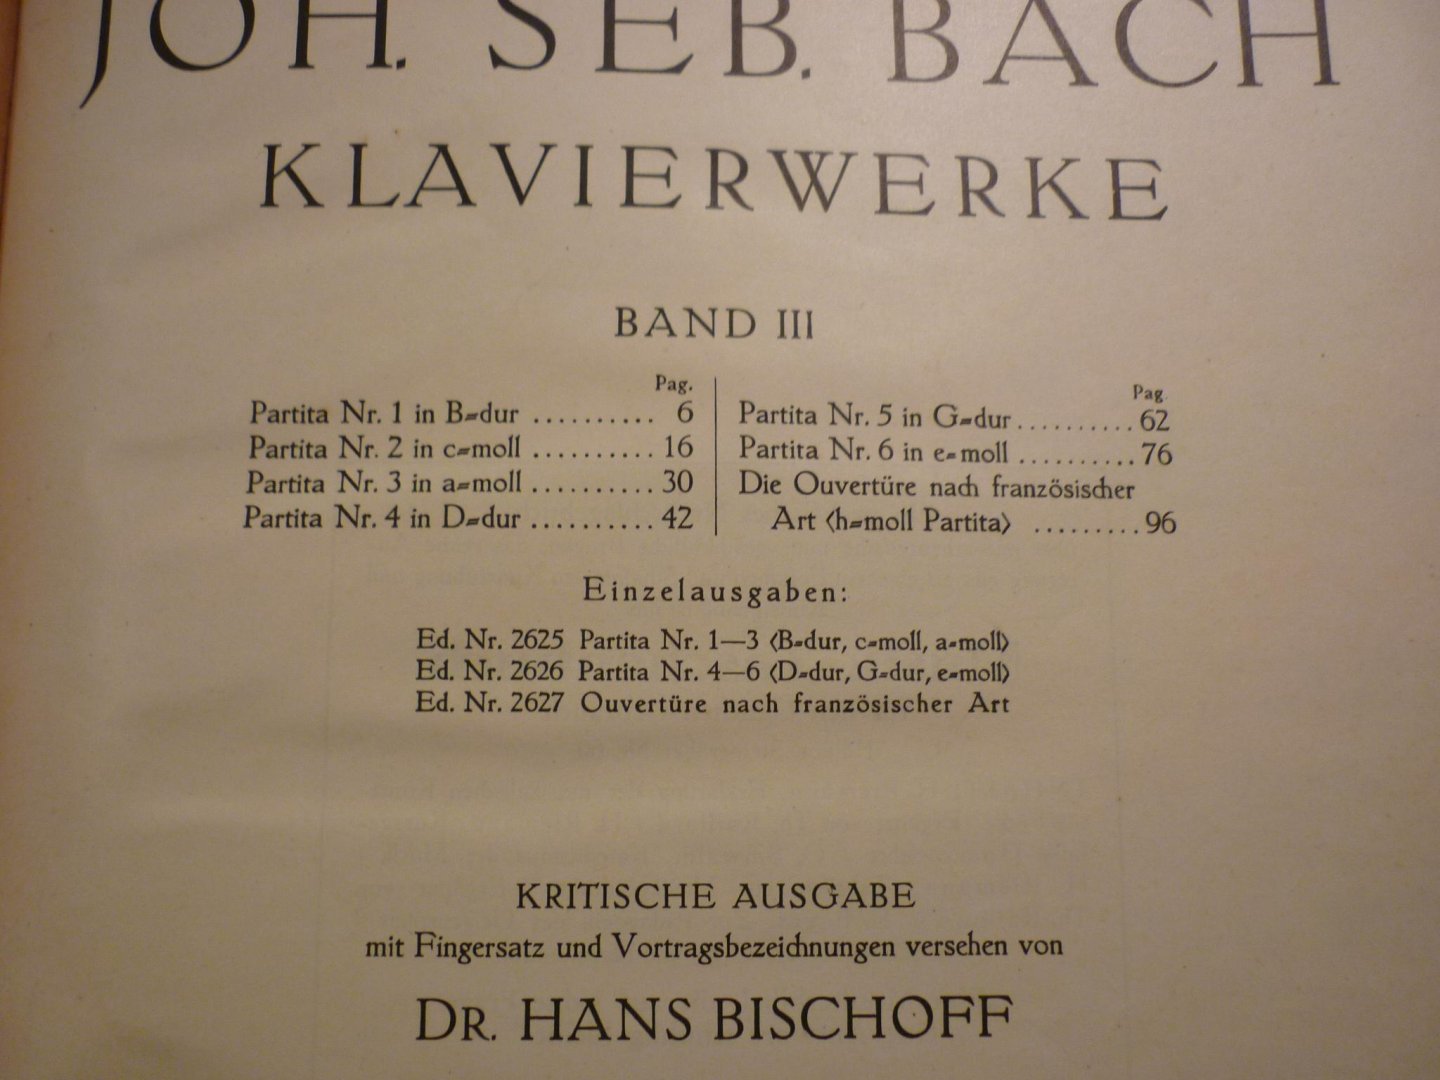 Bach; J. S. (1685-1750) - Klavierwerke; Band 3 - Partita Nr. 1-6; Die Ouverture nach Franzosischer Art; Krititsche Ausgabe mit Fingersatz und Vortragsbezeichnungen versehen von Dr. Hans Bischoff (Berlin, Apr. 1882) voor Piano - Originele unieke uitgave!